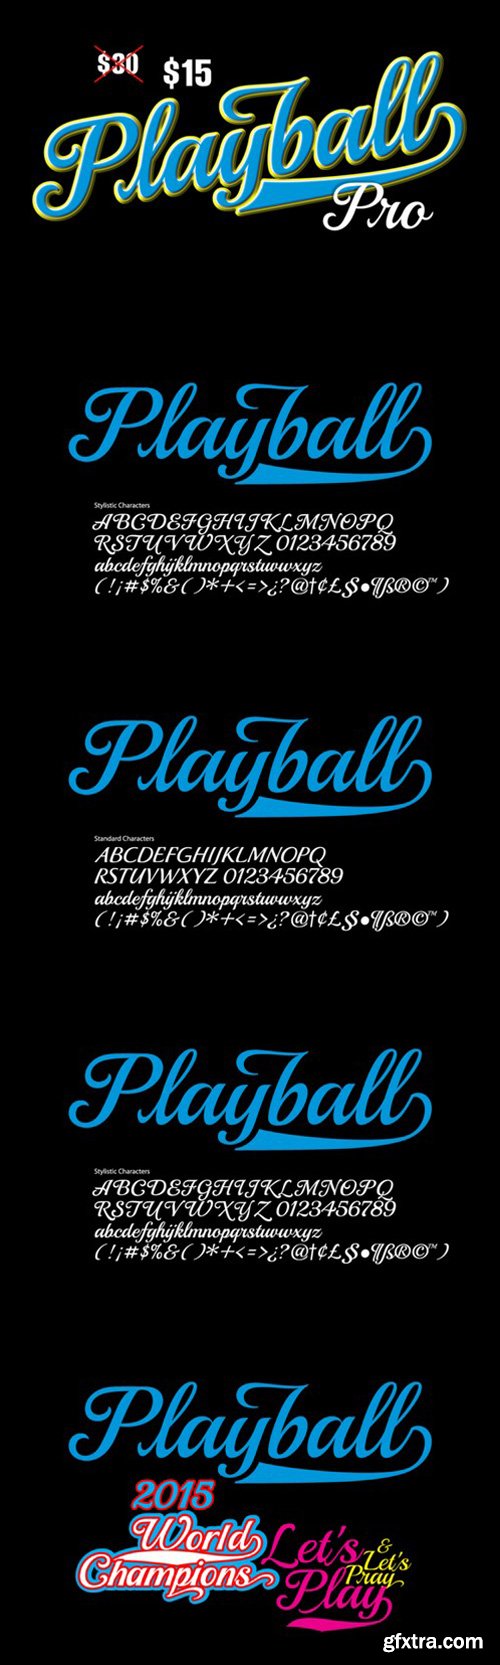 CM - Playball Pro 304774